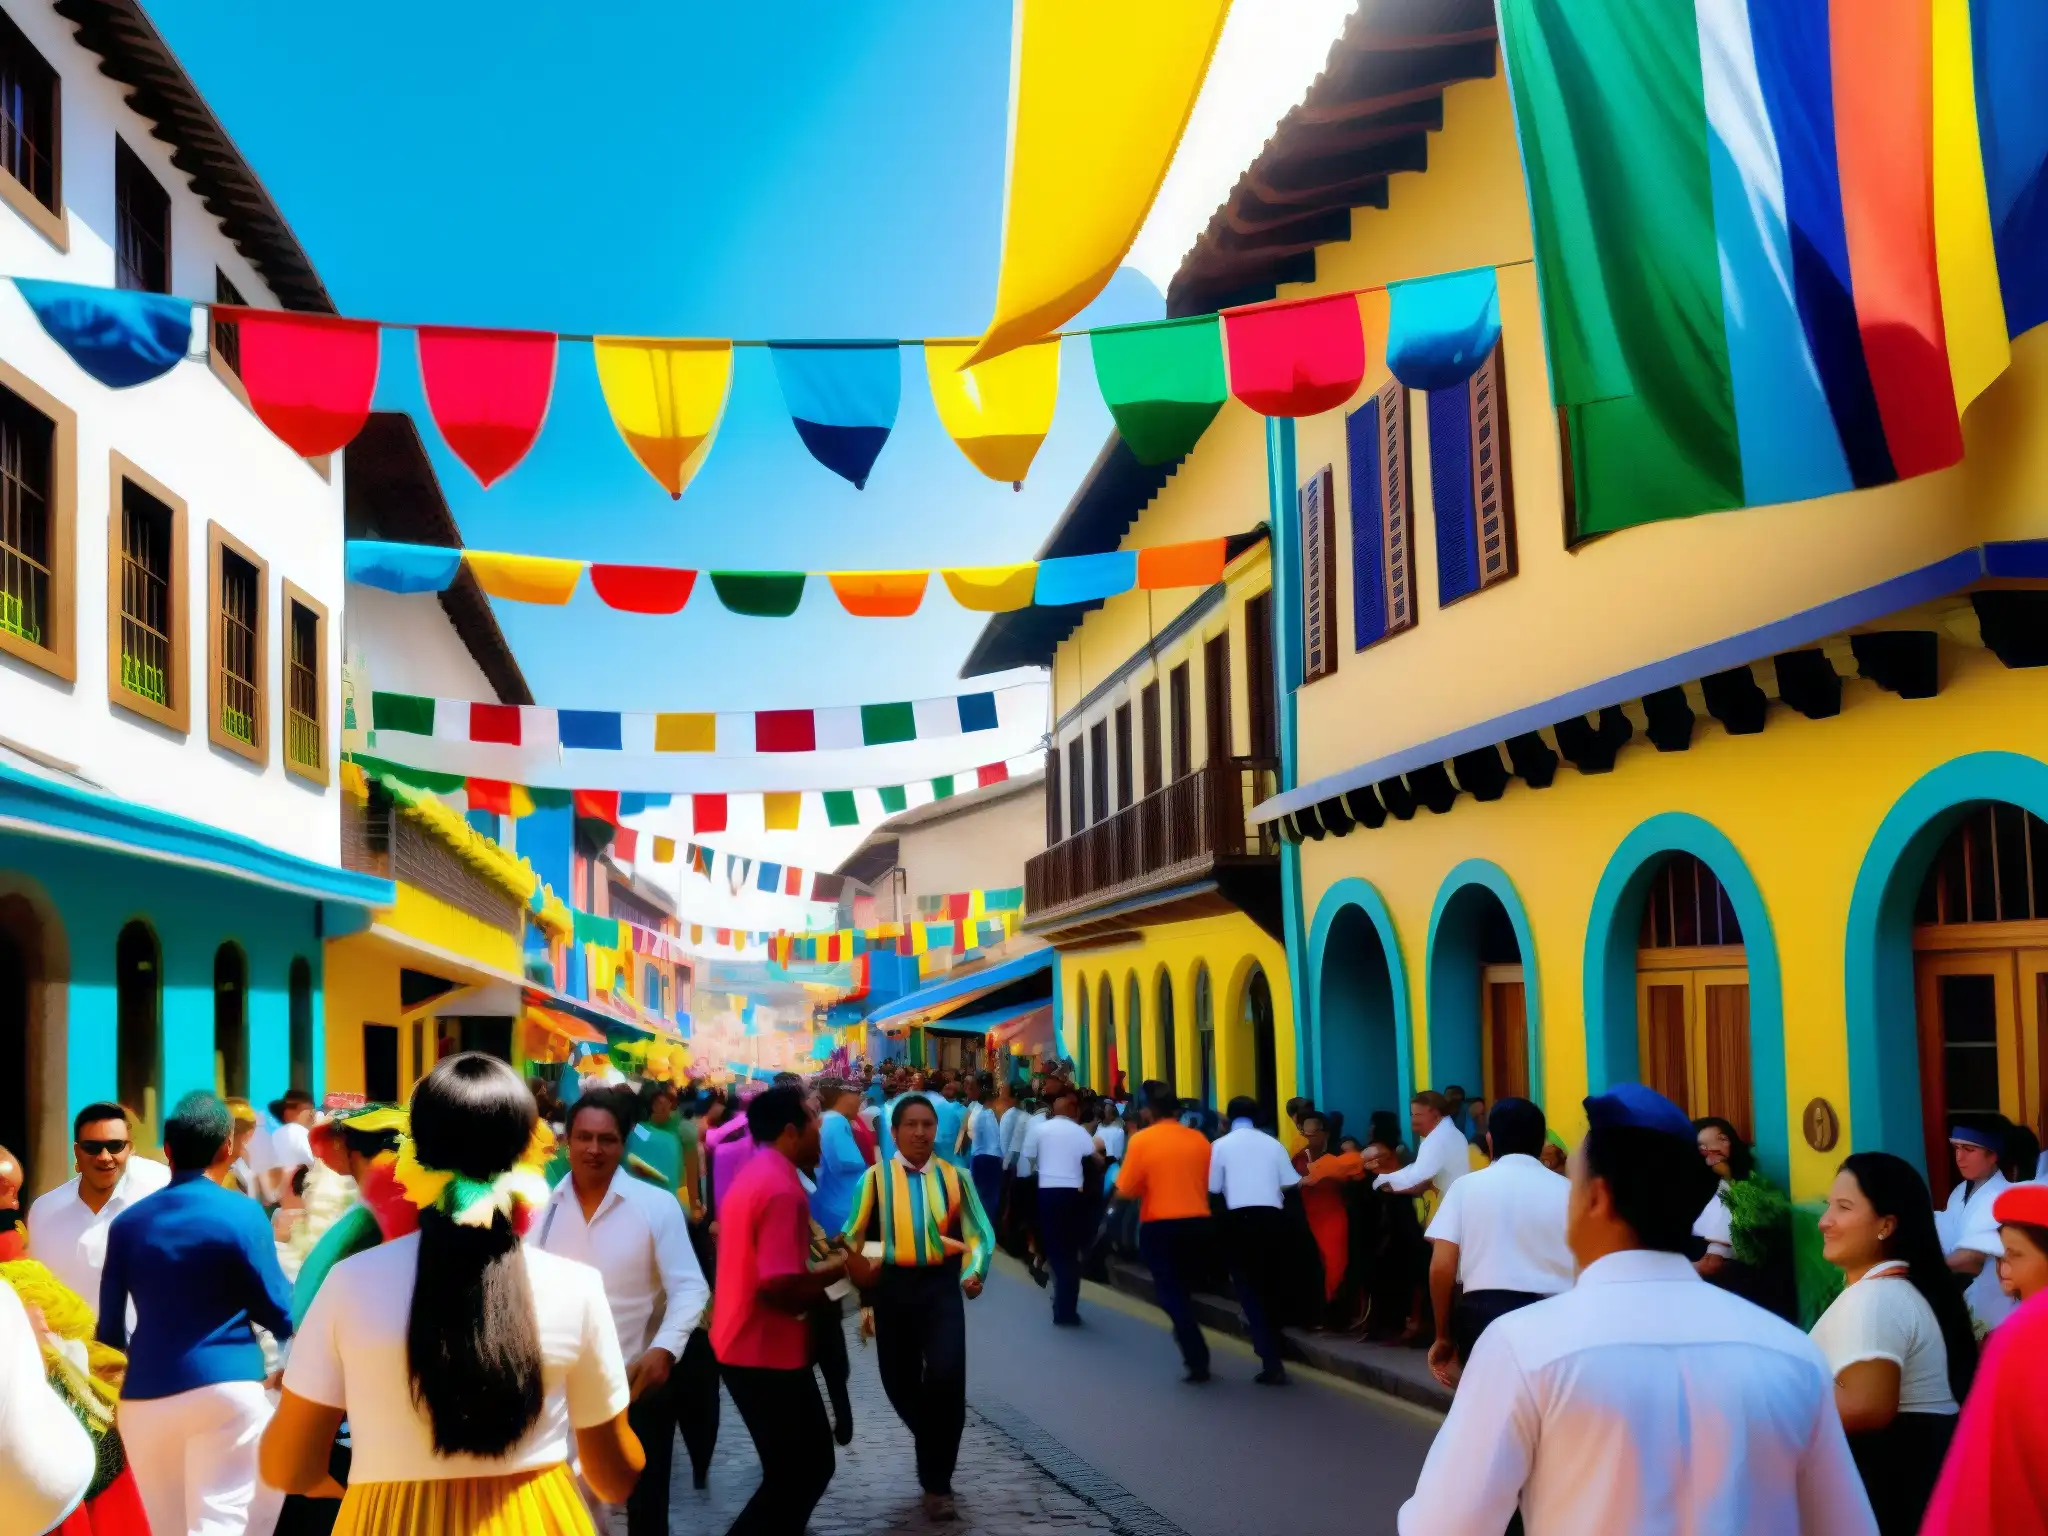 Escena vibrante del festival de San Pacho en América del Sur, con colores, bailes y música en las calles